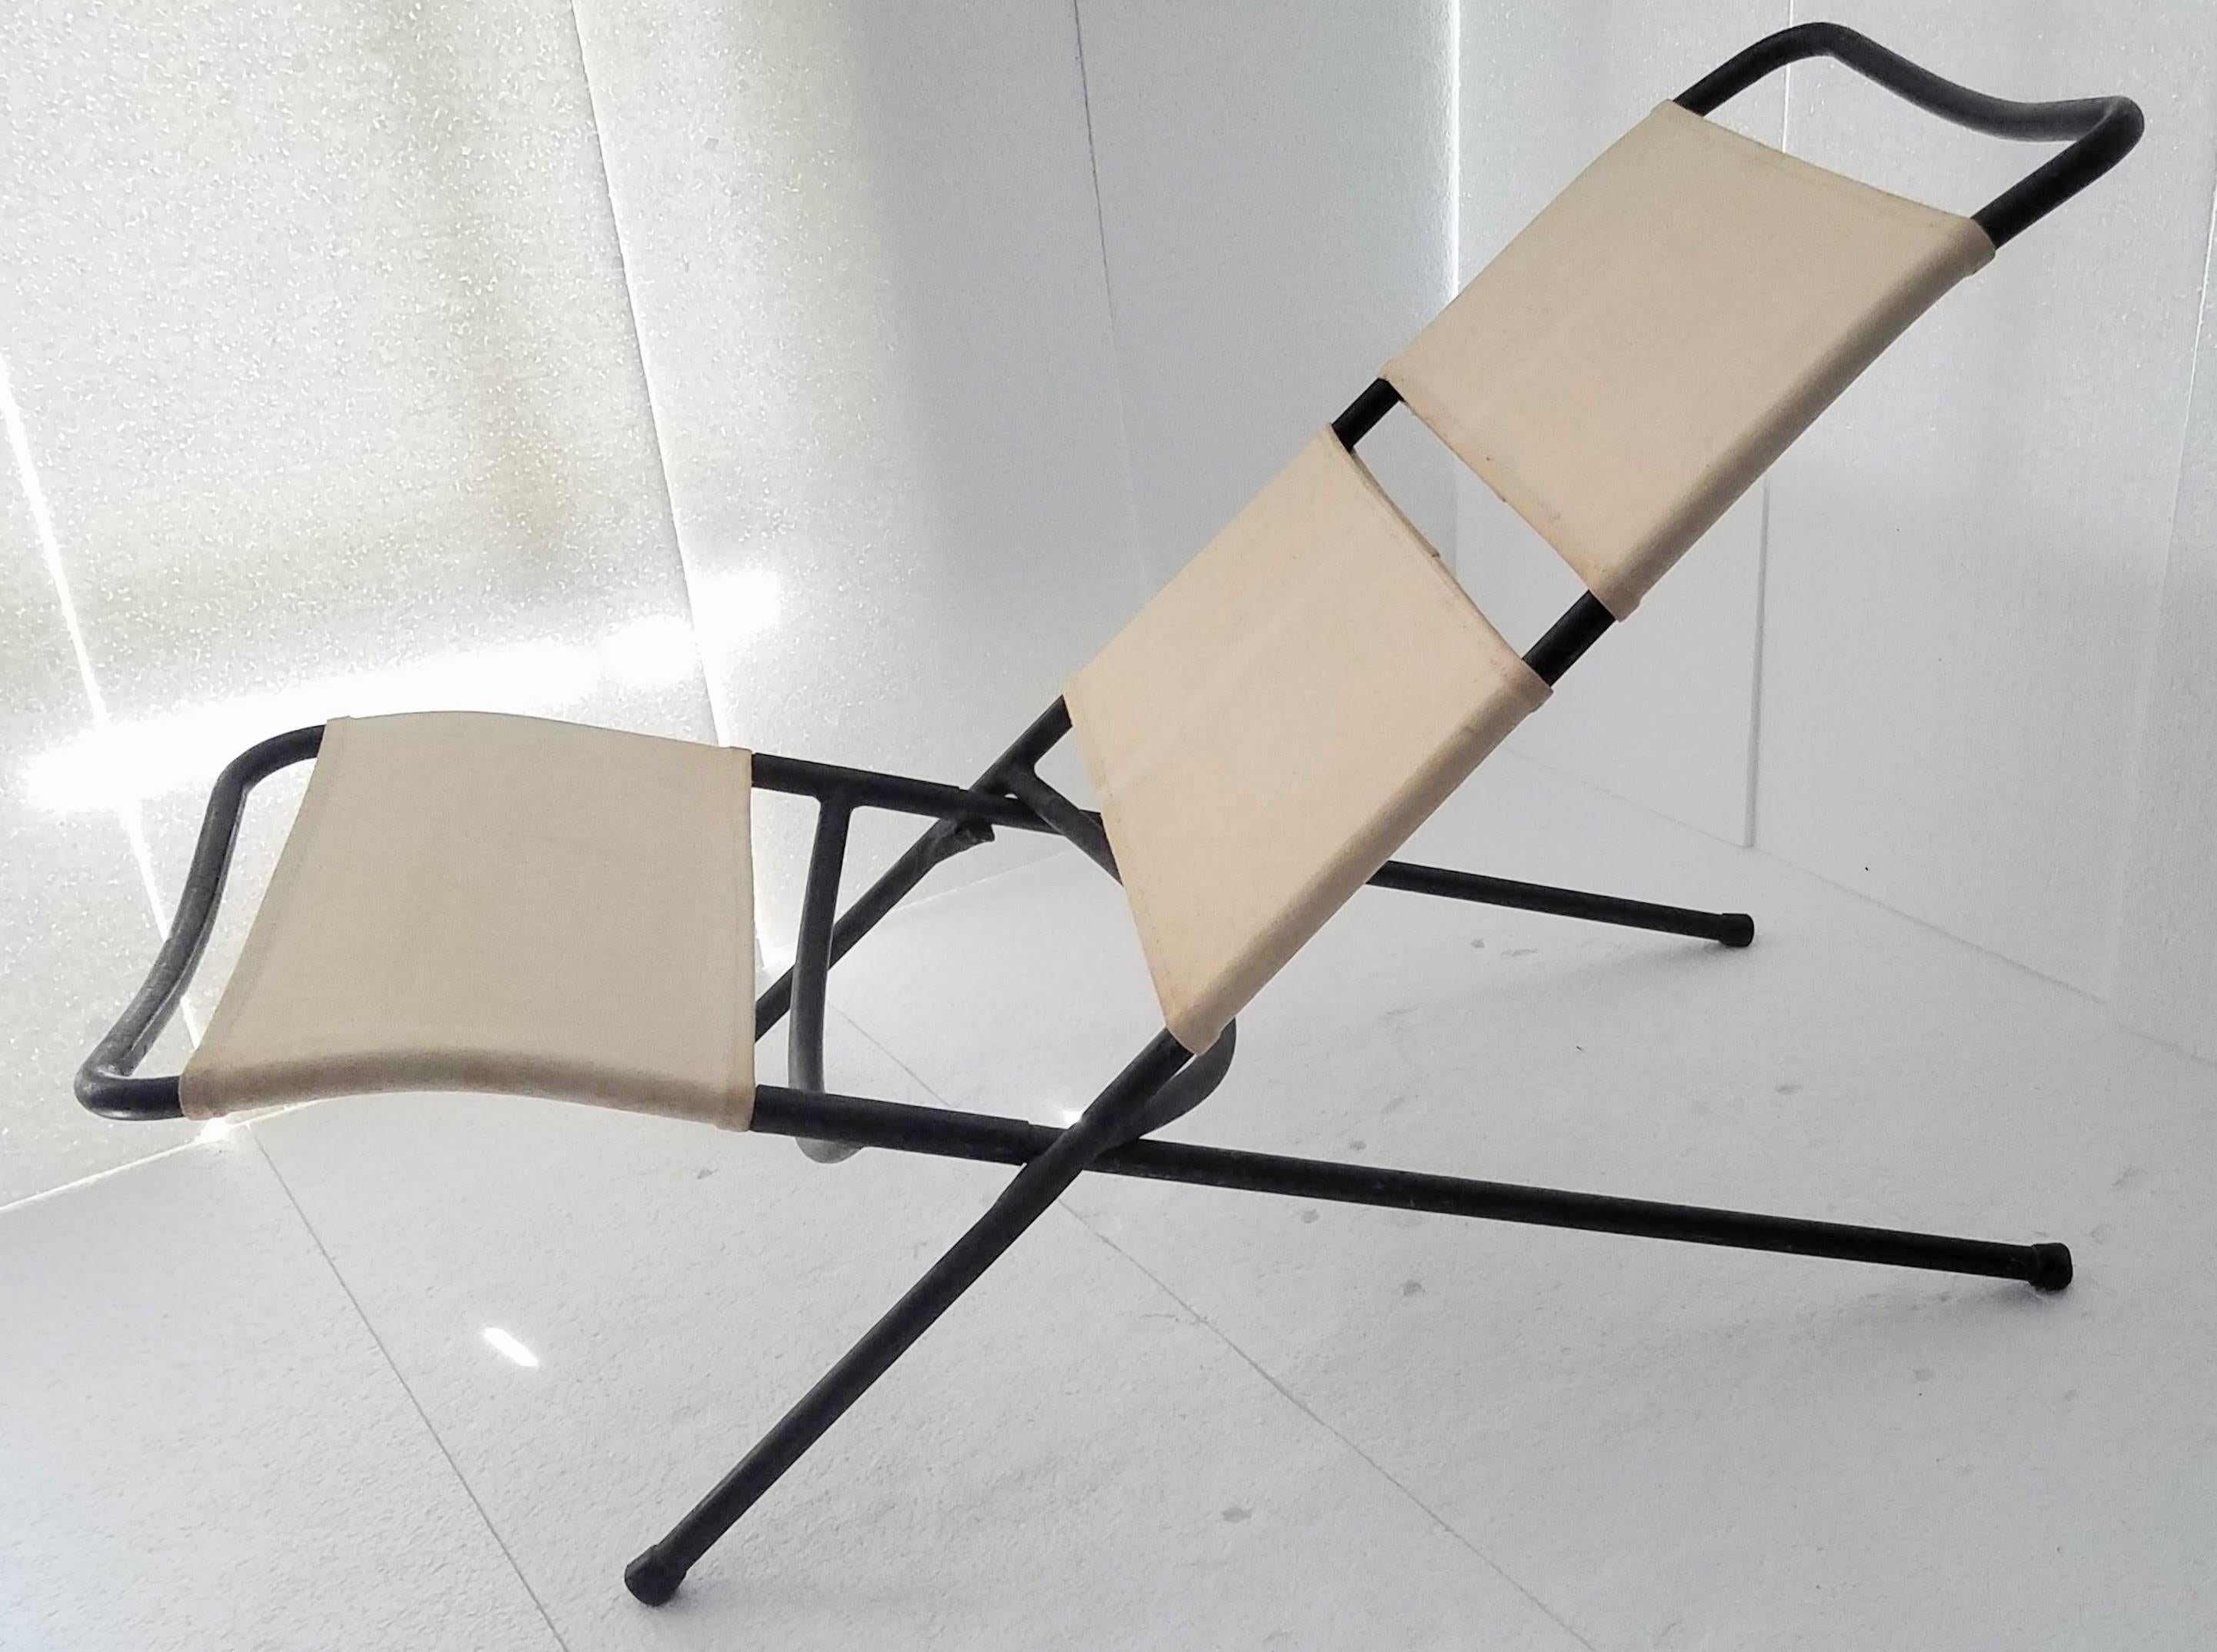 Kongo-Klappstuhl, entworfen von Ilmari Tapiovaara im Jahr 1954, hergestellt von Lukkiseppo Ltd. in Finnland.
Dieser Prototyp des Kongo-Stuhls stammt aus dem Nachlass von Ilmari Tapiovaara.
Selten.
In sehr gutem Zustand.